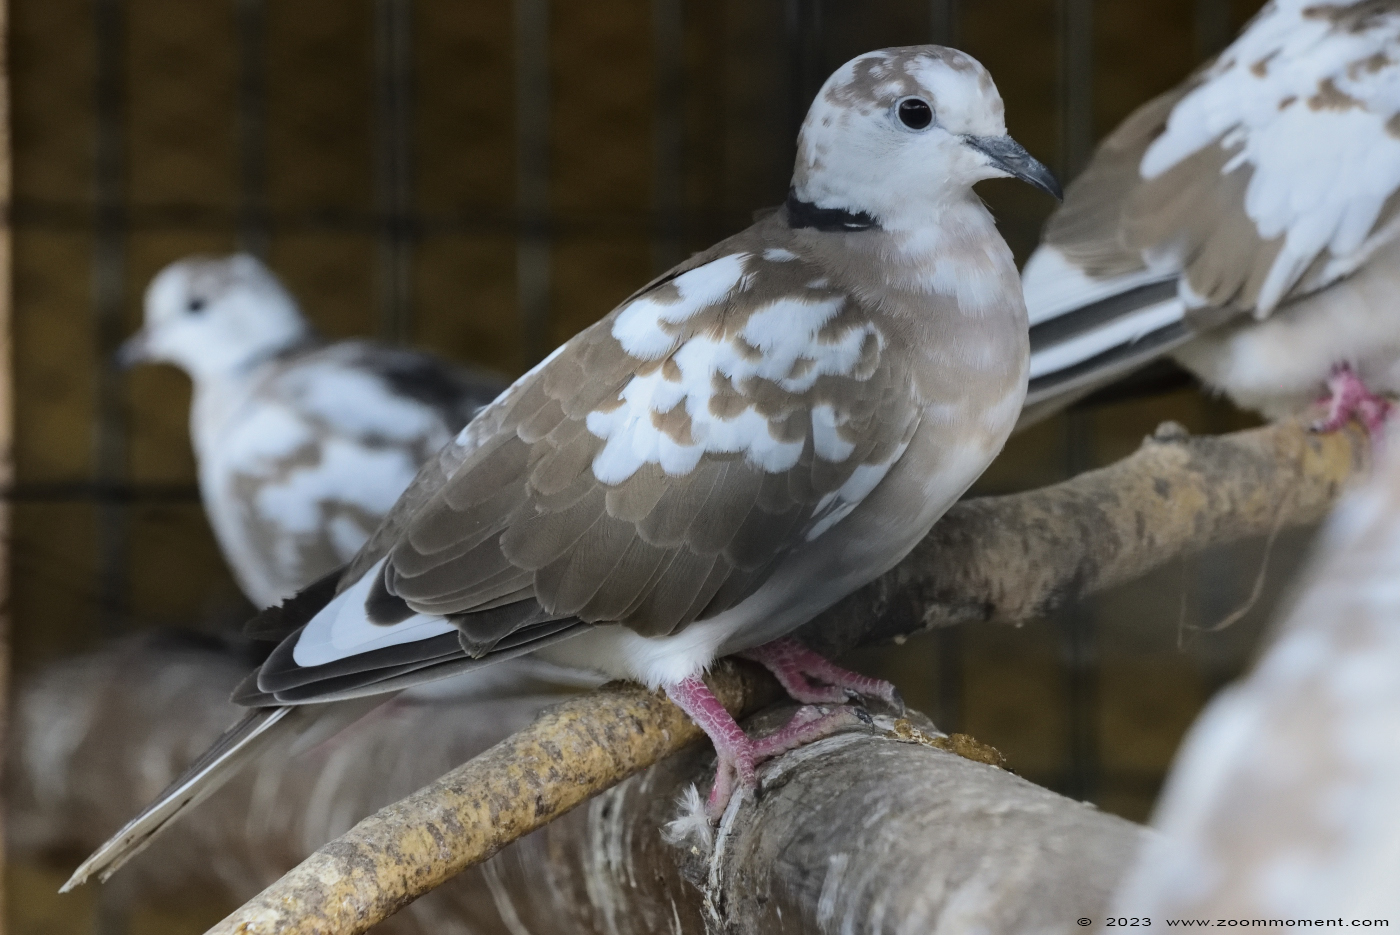 duif dove
Trefwoorden: Tierpark Donnersberg Germany duif dove